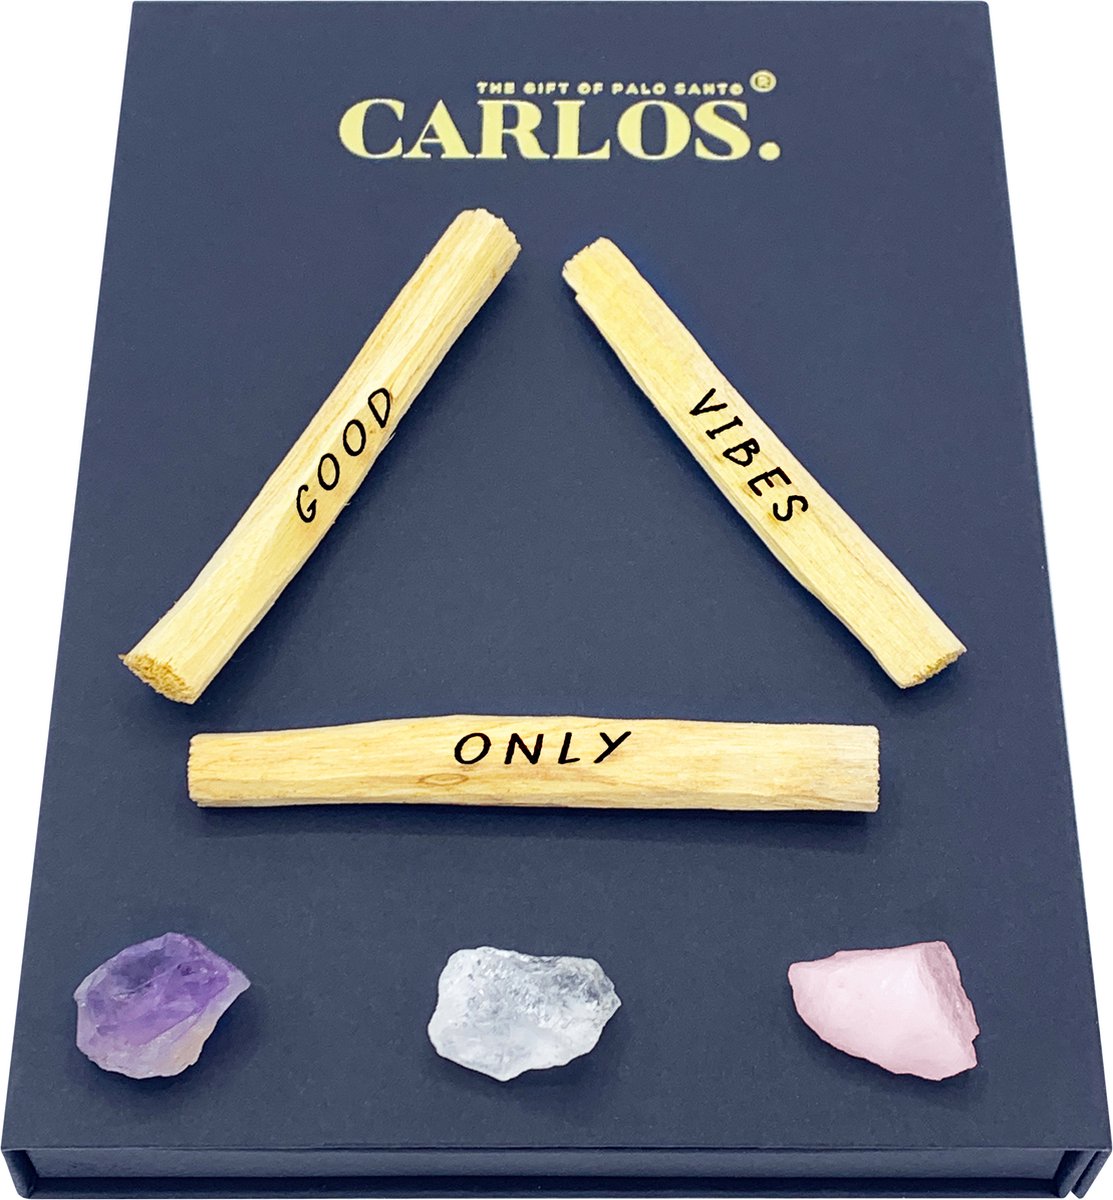 Luxe giftset PALO SANTO met gegraveerde boodschap GOOD VIBES ONLY + 3 edelstenen: amethist, bergkristal, rozenkwarts.